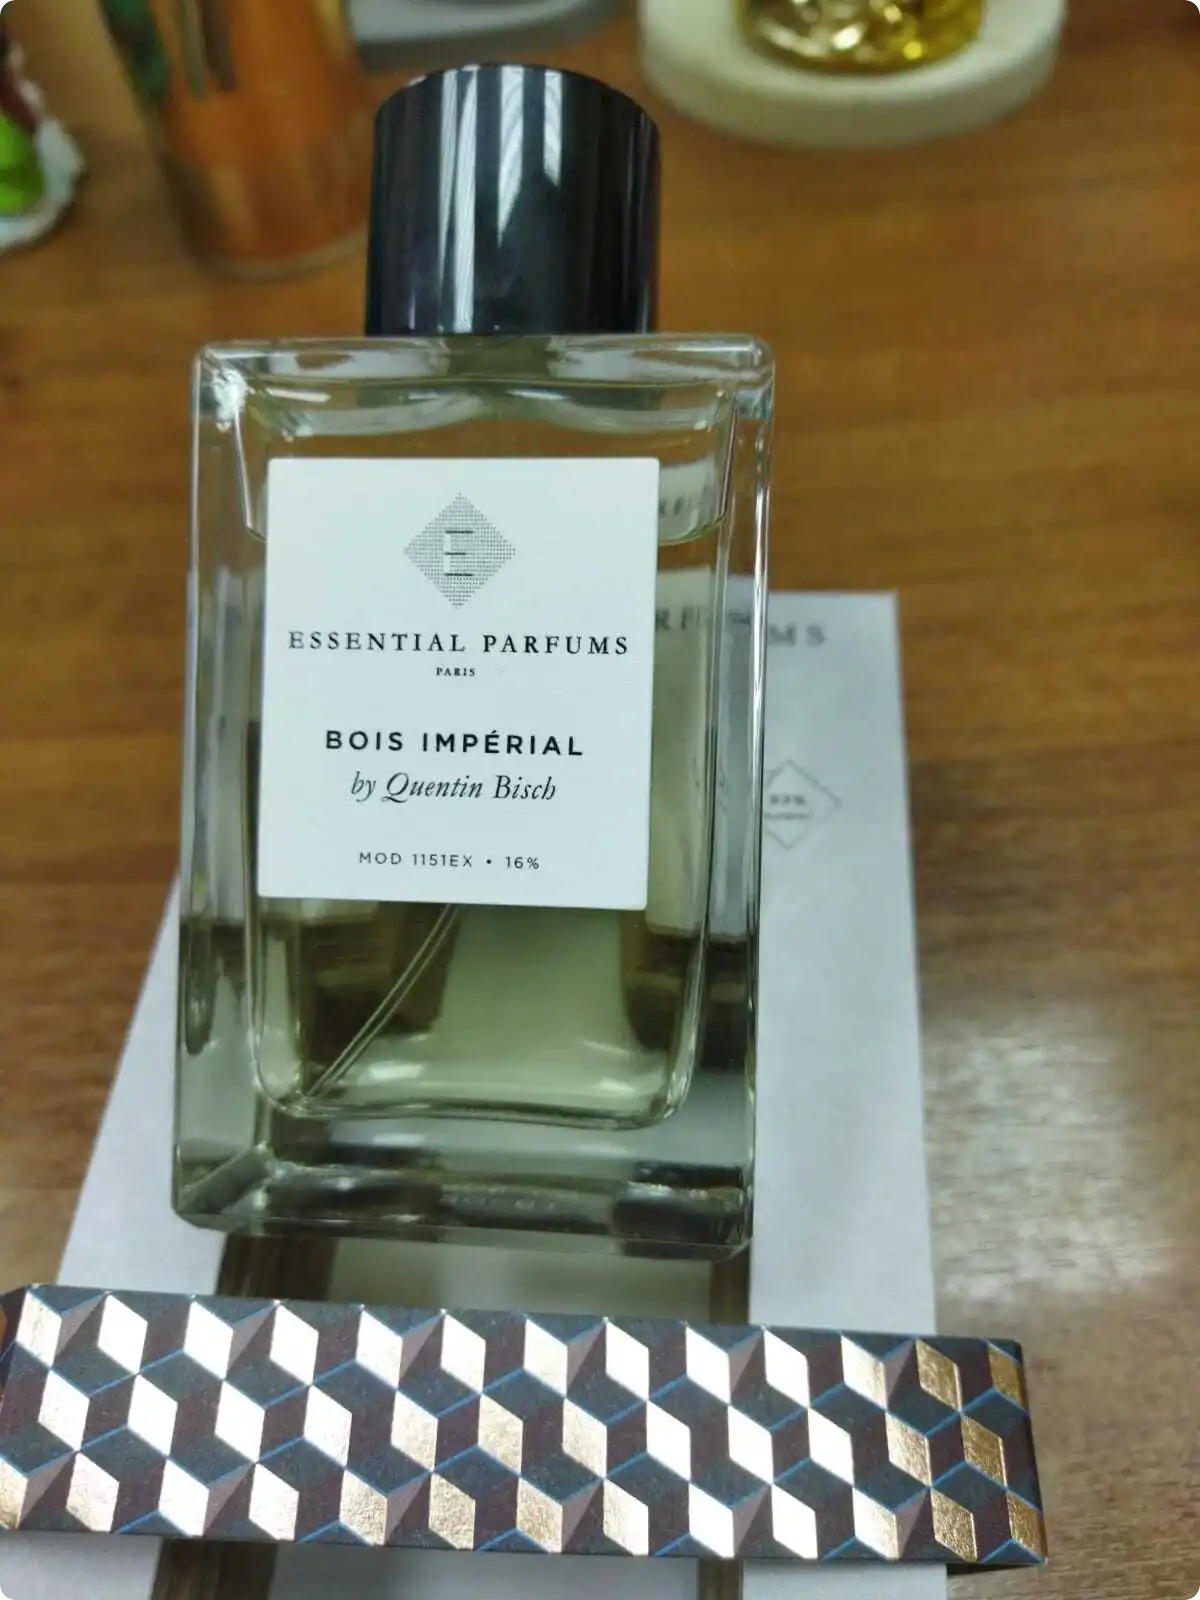 Essential parfums bois imperial оригинал. Essential Parfums bois Imperial 100 ml. Essential Parfums Paris bois Impérial by Quentin bisch духи. Bois Imperial Essentials парфюмерия. Аромат bois Imperial Essential Parfums.